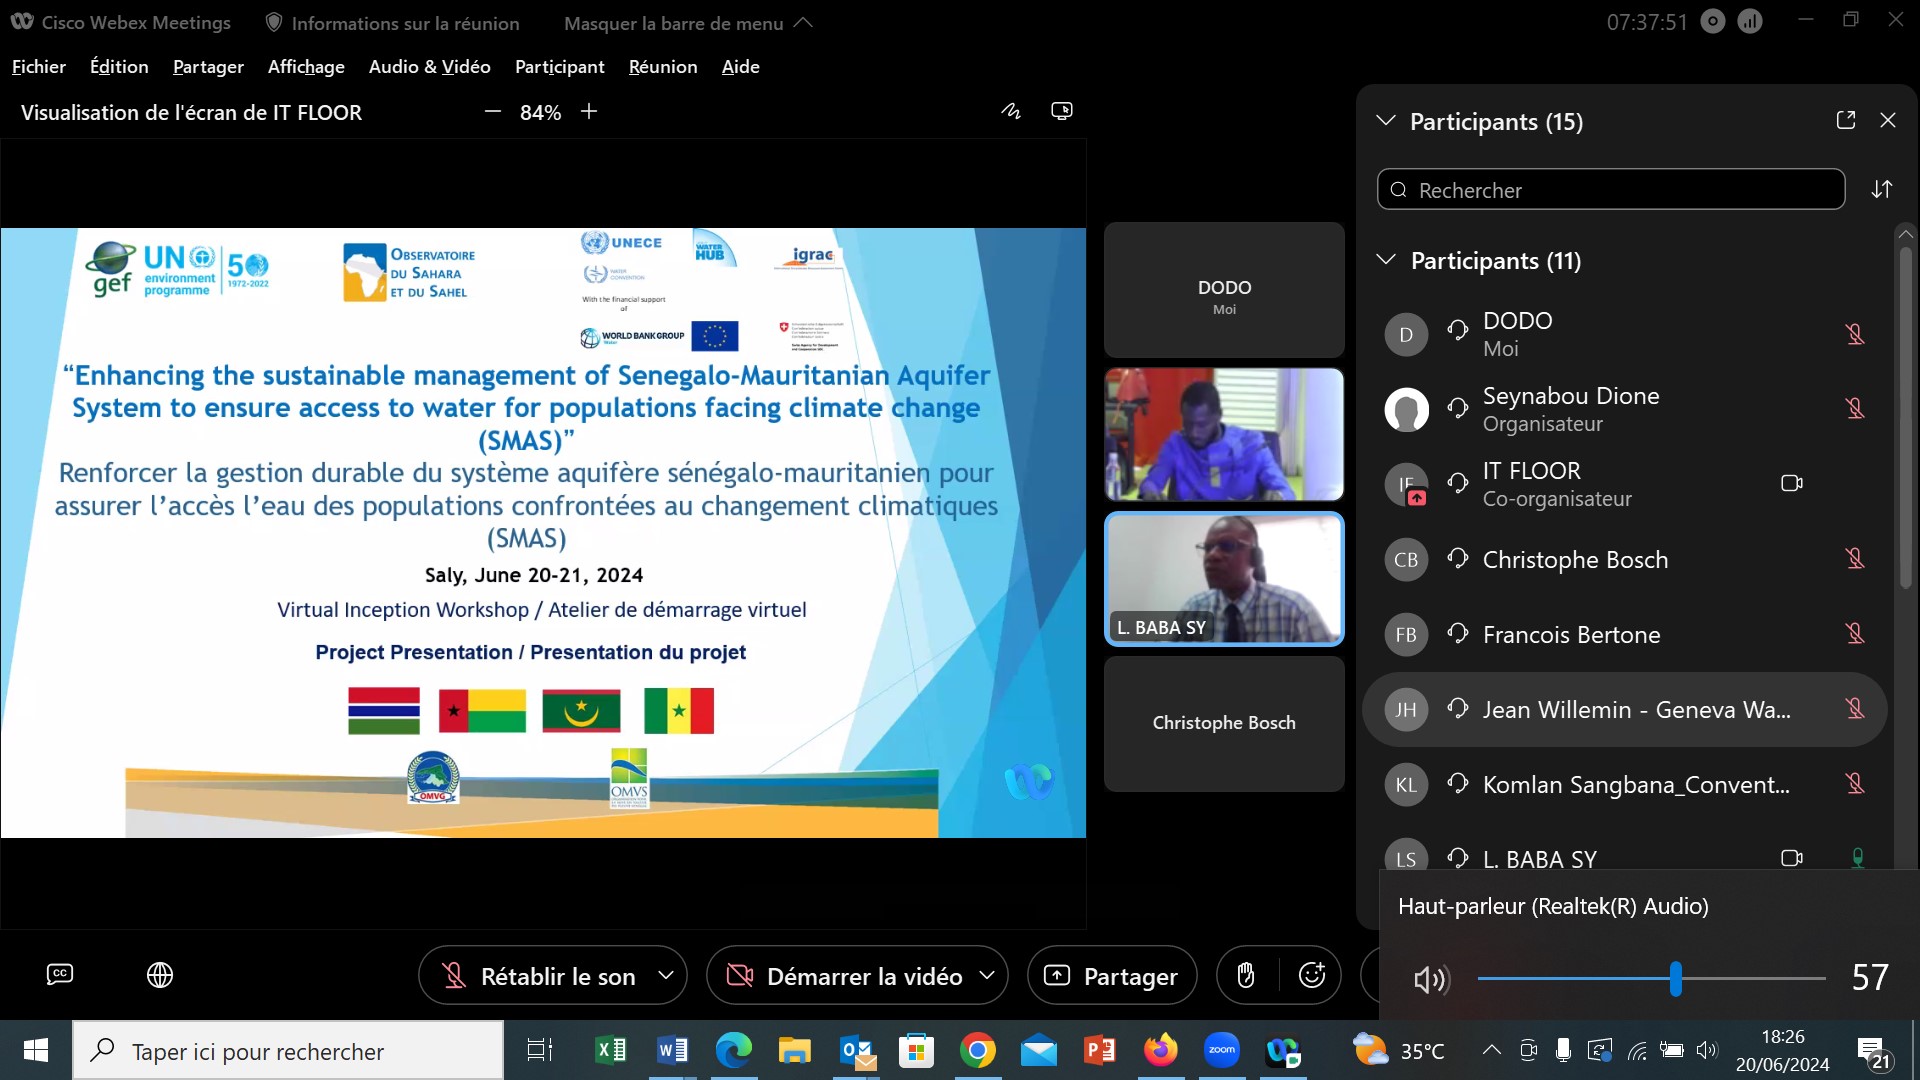  Gestion concertée du Bassin aquifère sénégalo-mauritanien : Bilan de la phase de démarrage du projet SMAS et réunion du Groupe de Travail Régional